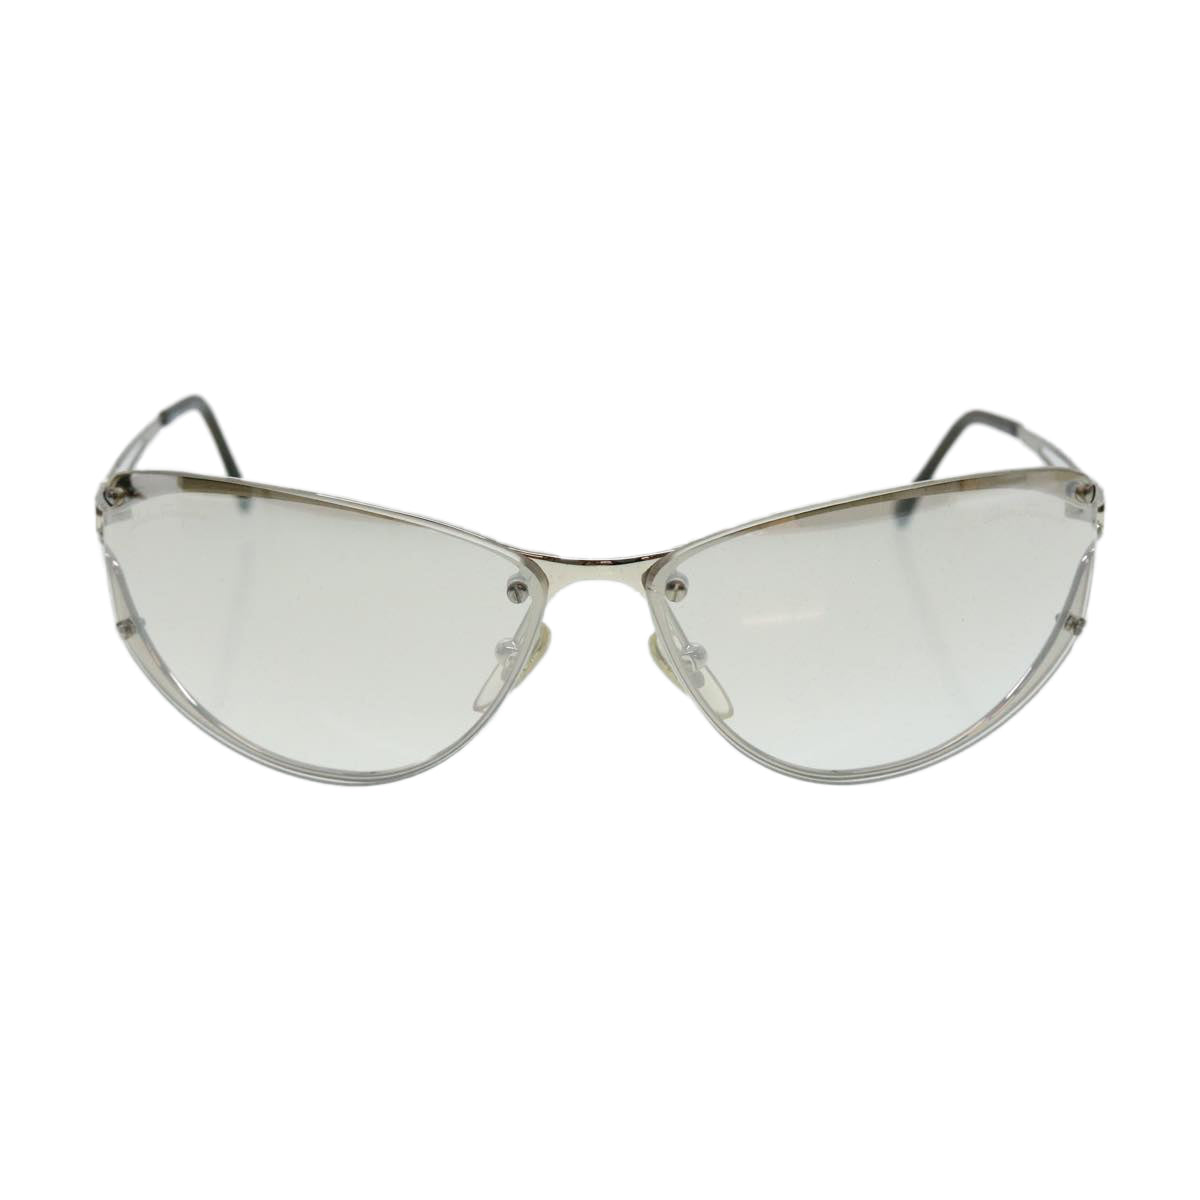 Salvatore Ferragamo Sunglasses Silver Auth 37977 - 0